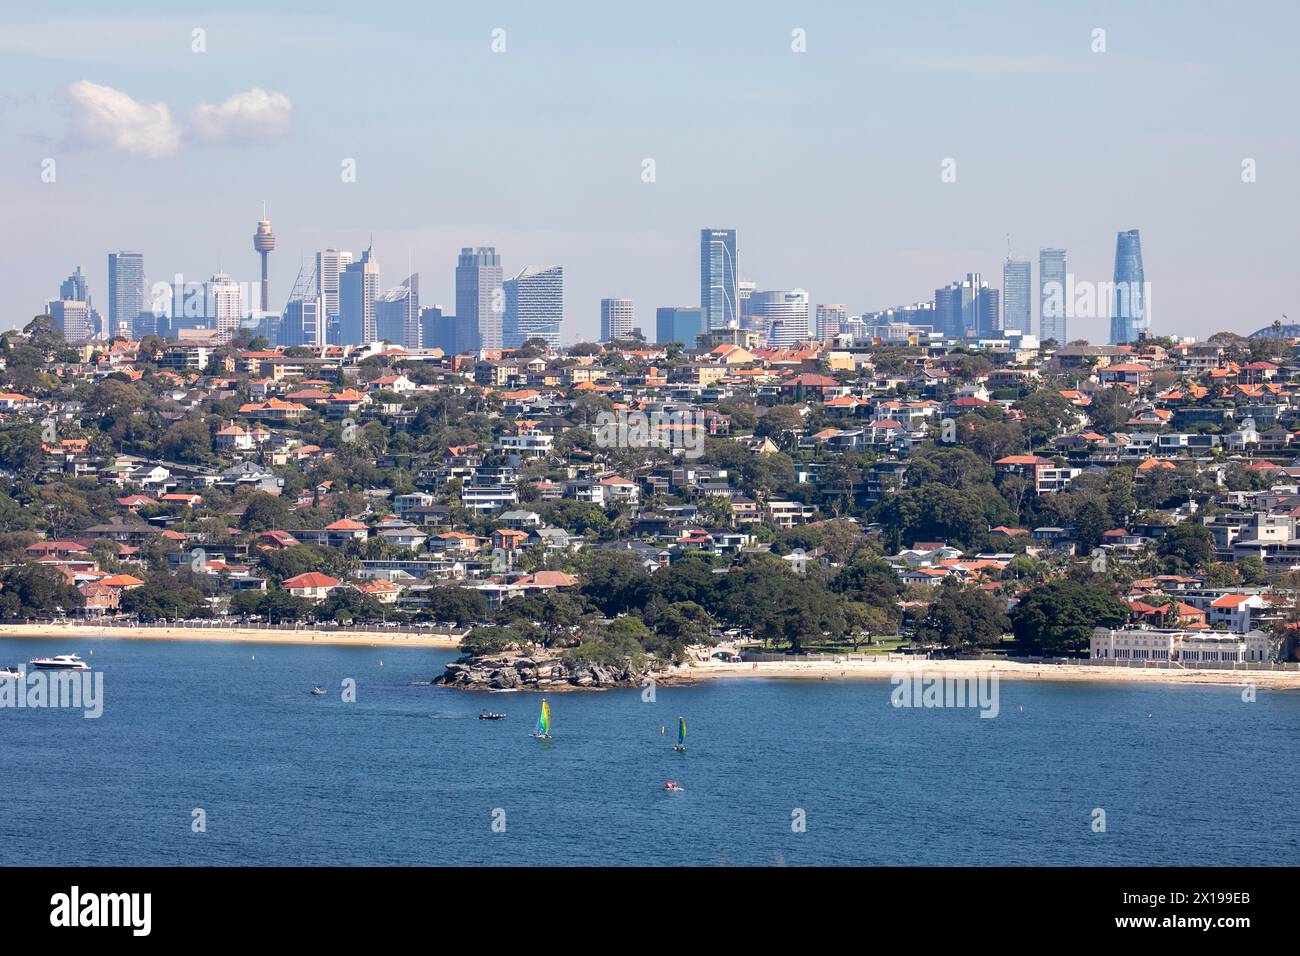 Balmoral e Edwards Beach, separate dall'Isola di Rocky Point con dense abitazioni urbane e grattacieli di Sydney e il centro citta' visibile, Australia Foto Stock